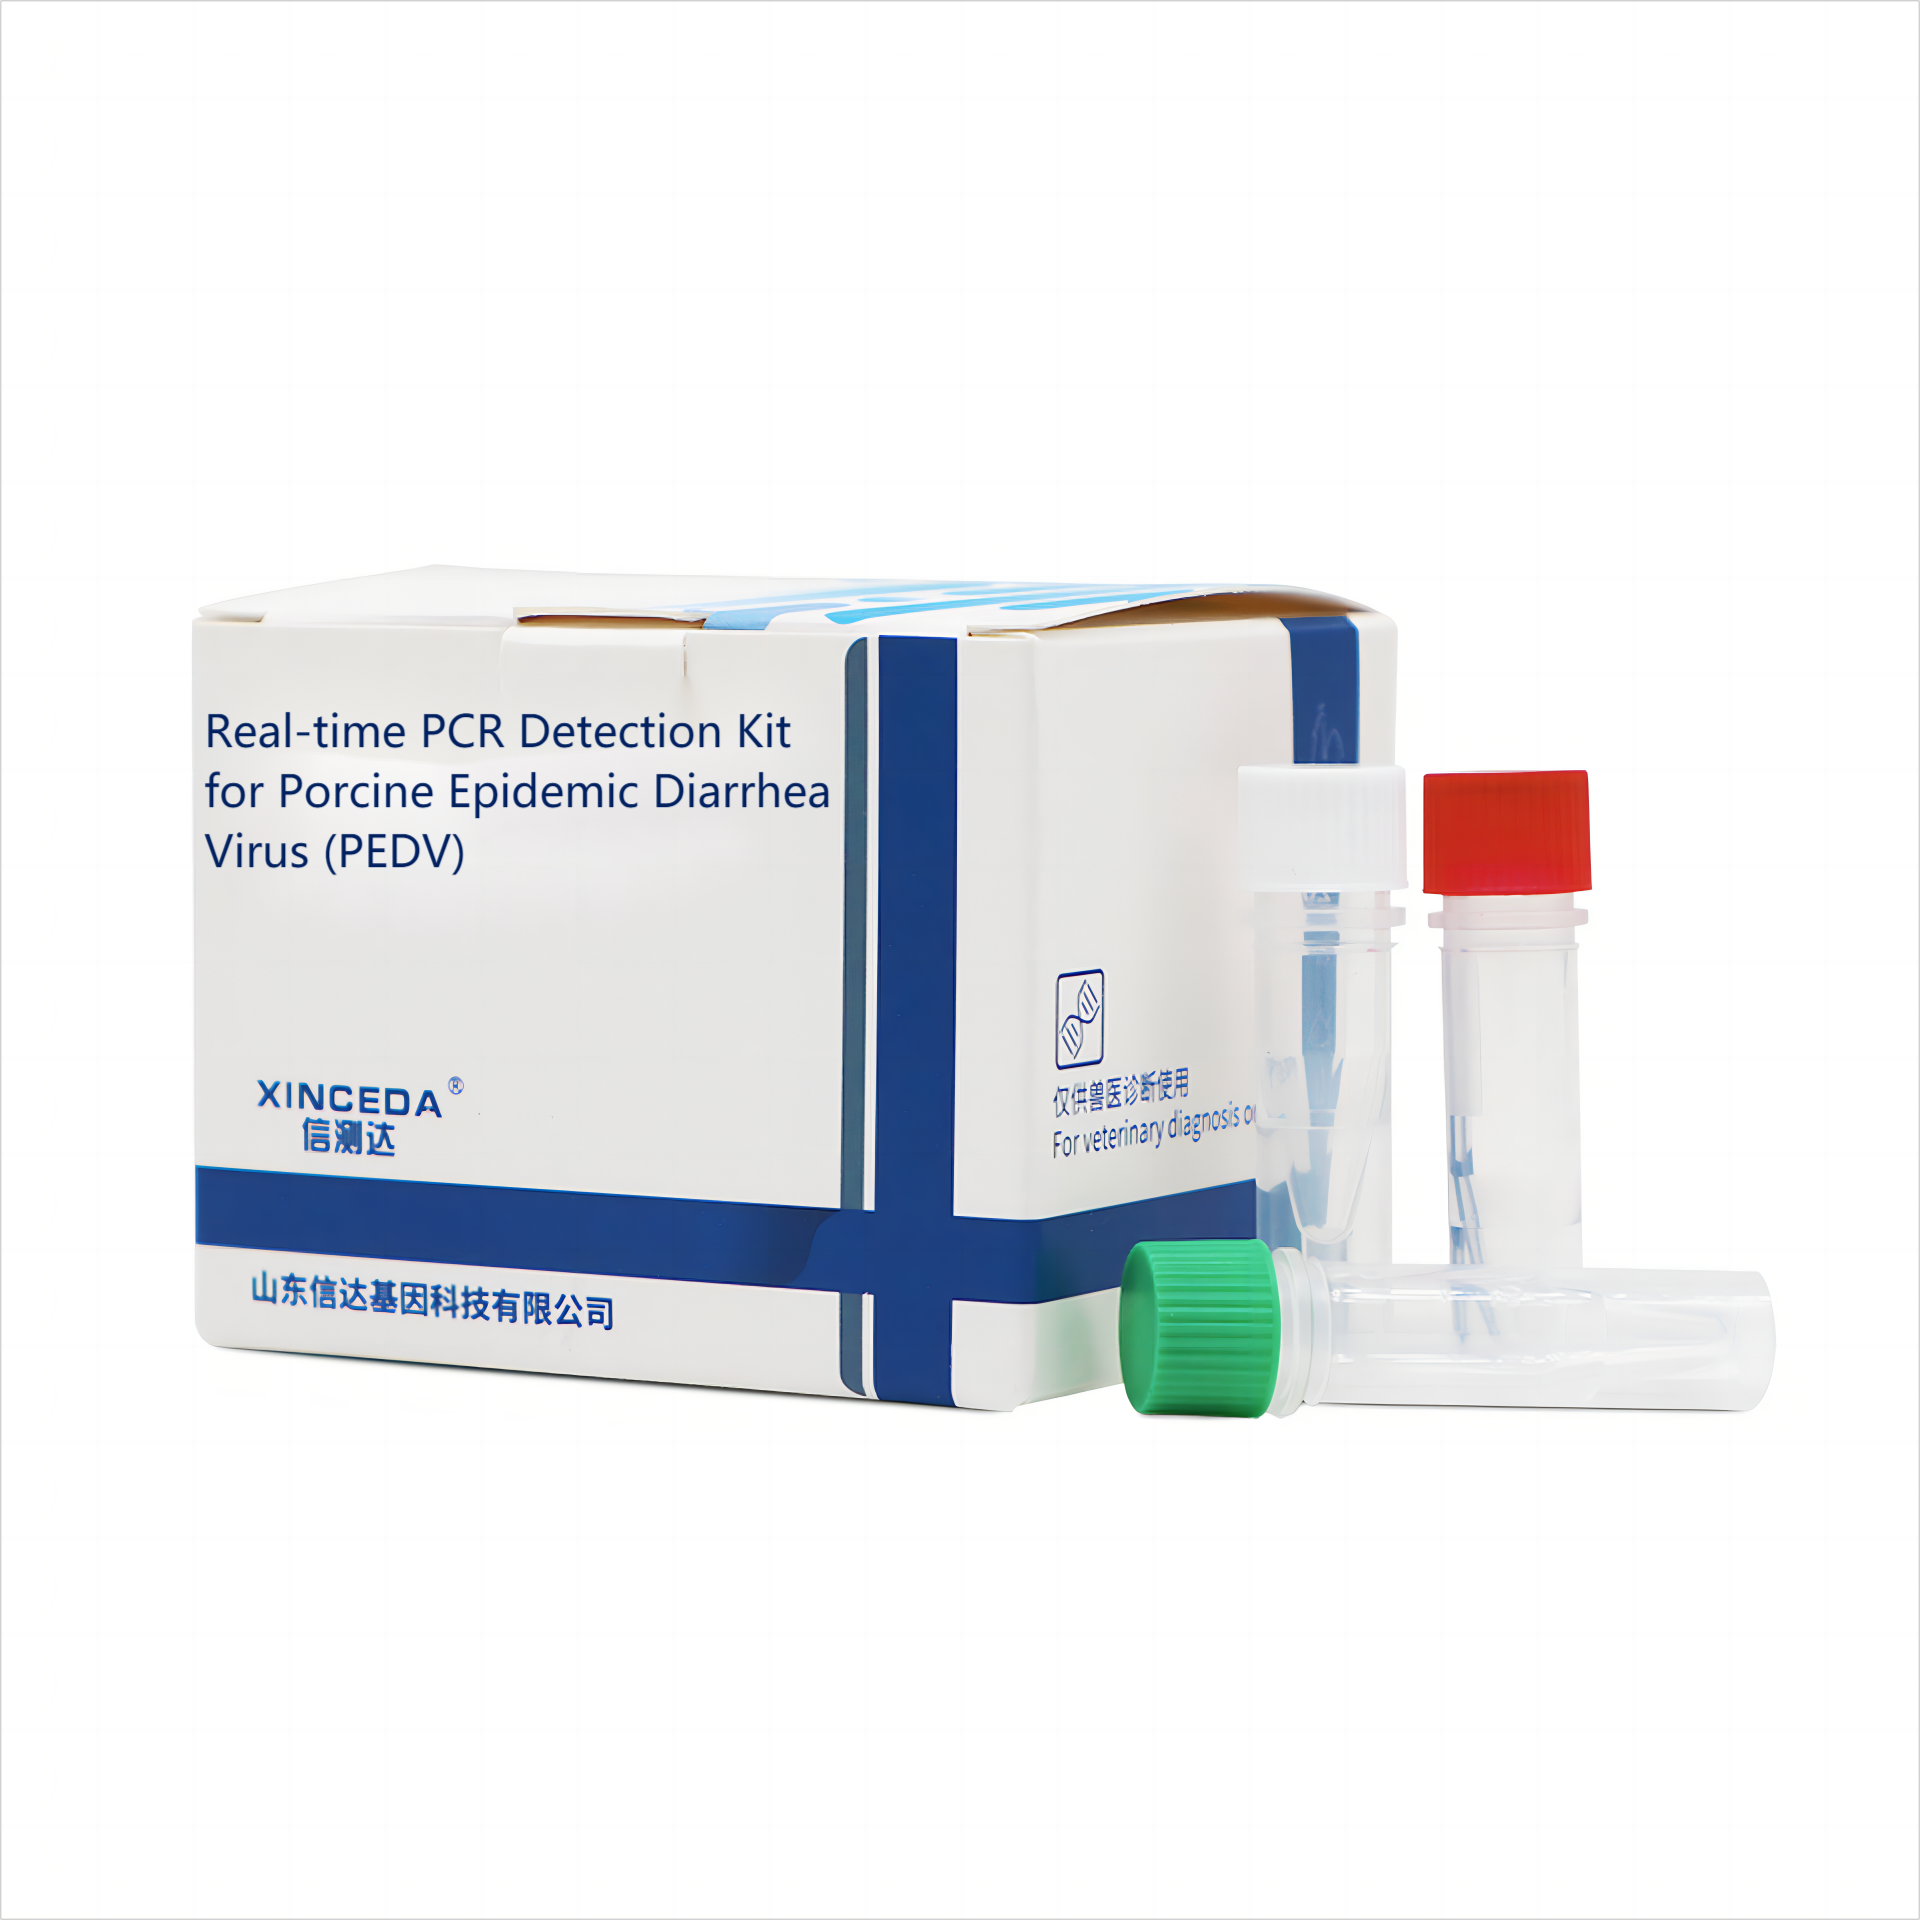 PCR Testing for Porcine Epidemic Diarrhea Virus (PEDV)